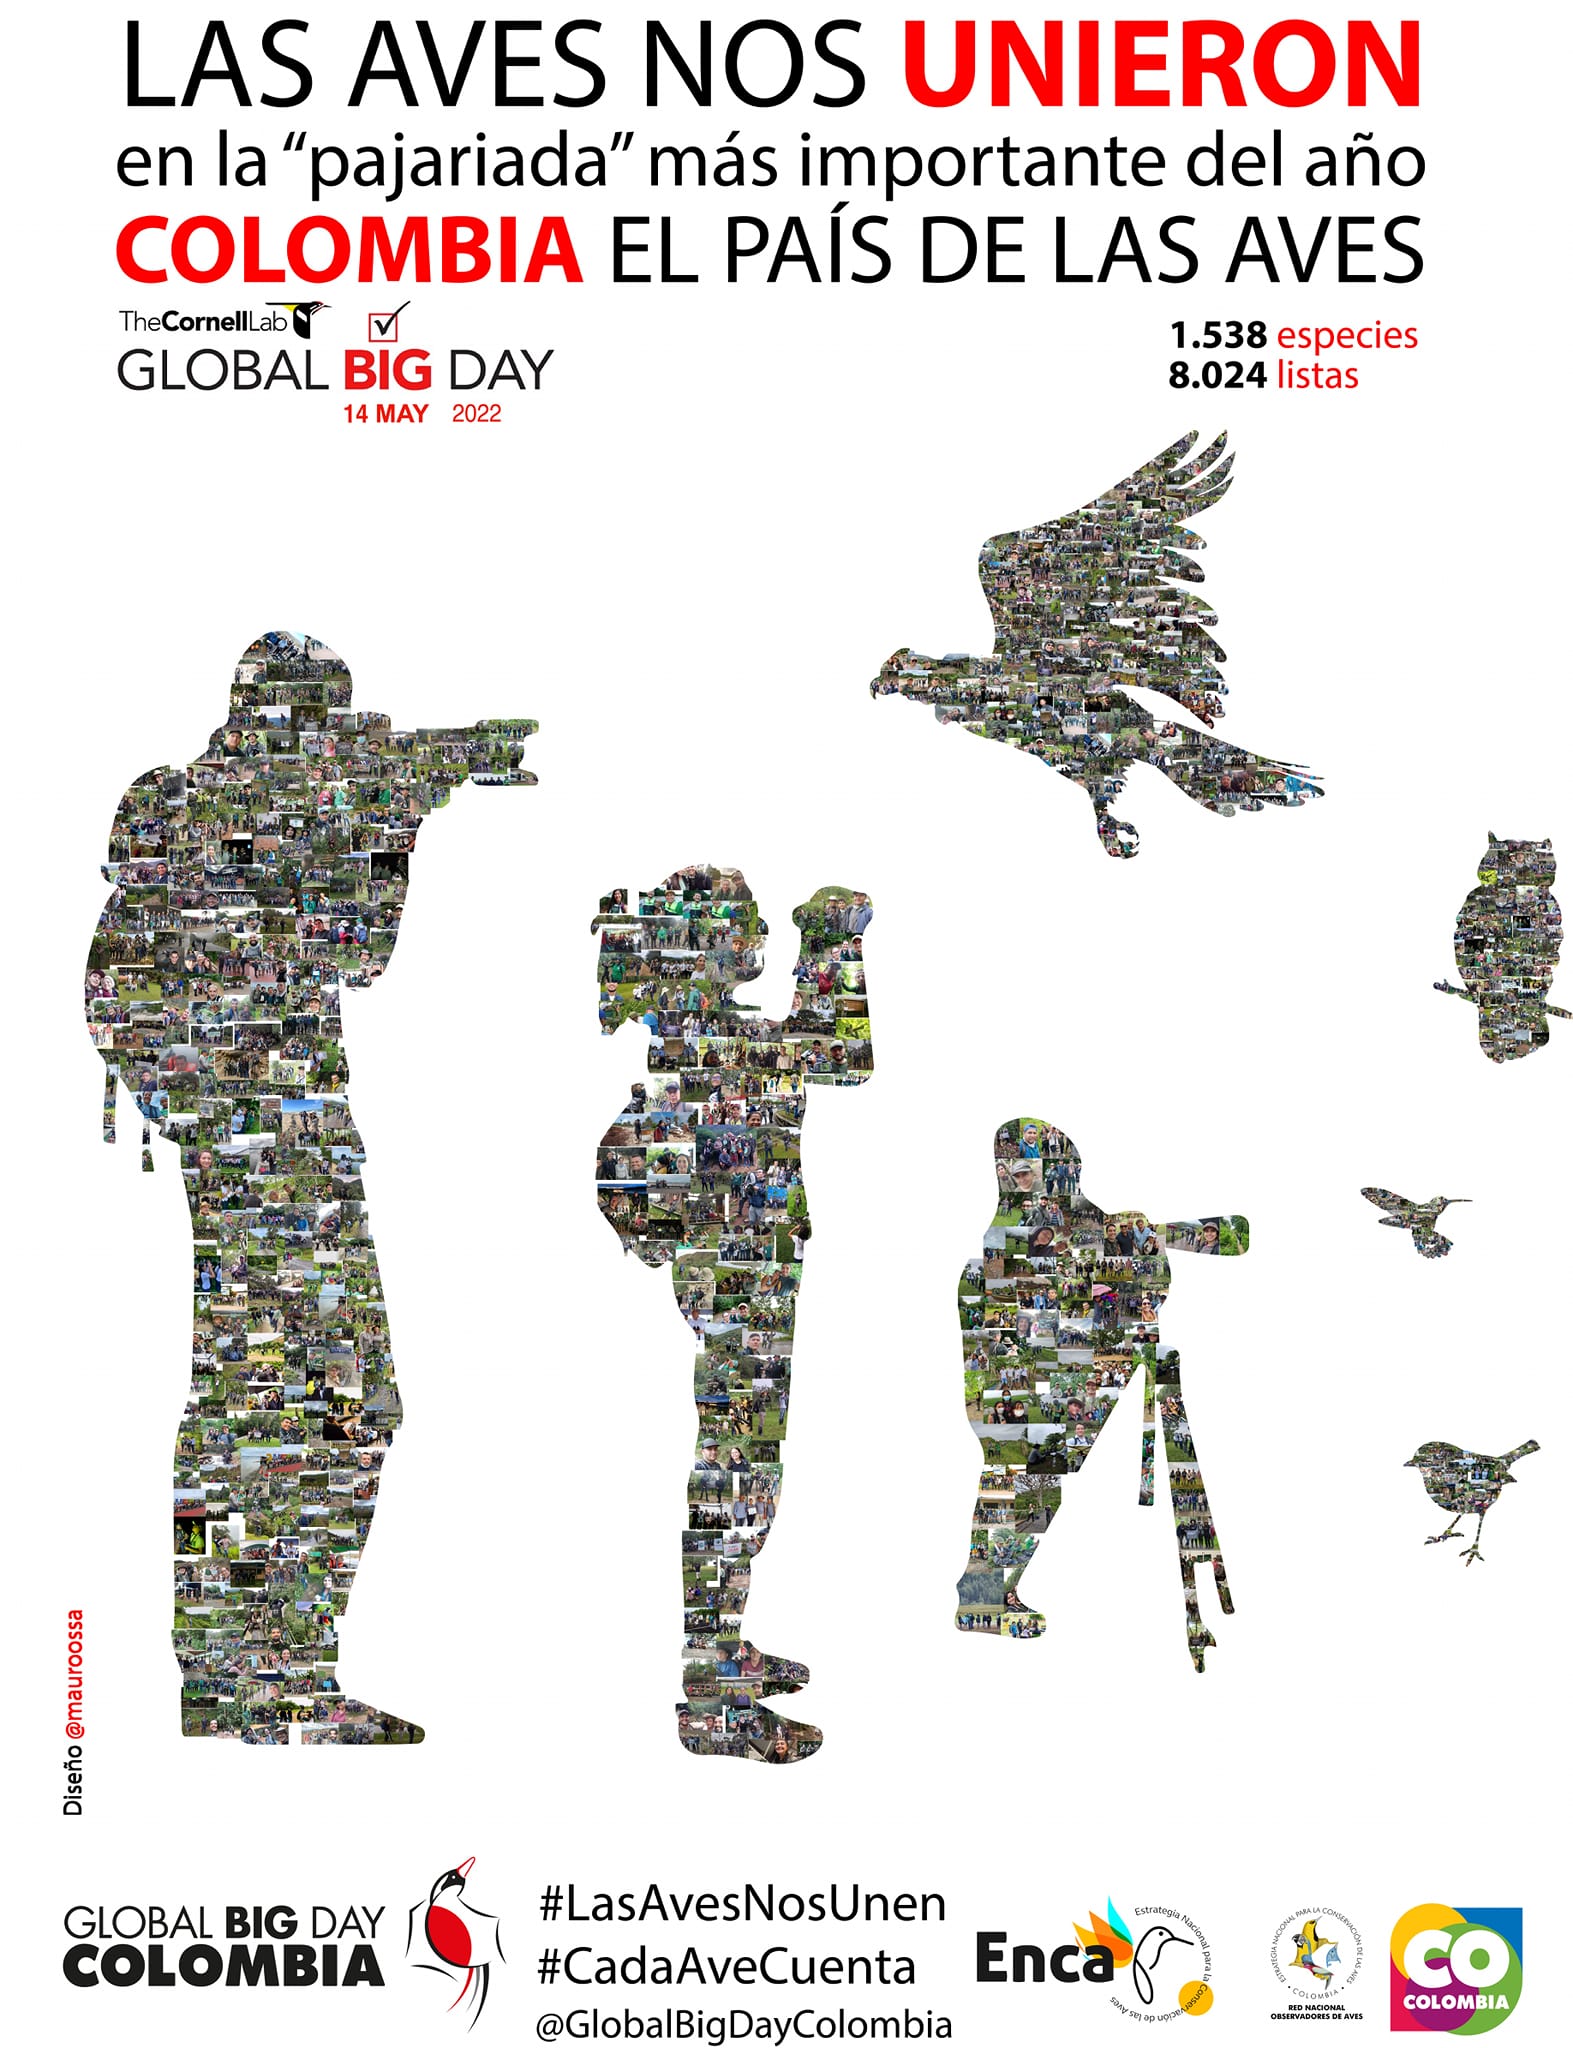 De nuevo Colombia ocupó el primer lugar en el Global Big Day Agenciapi.co